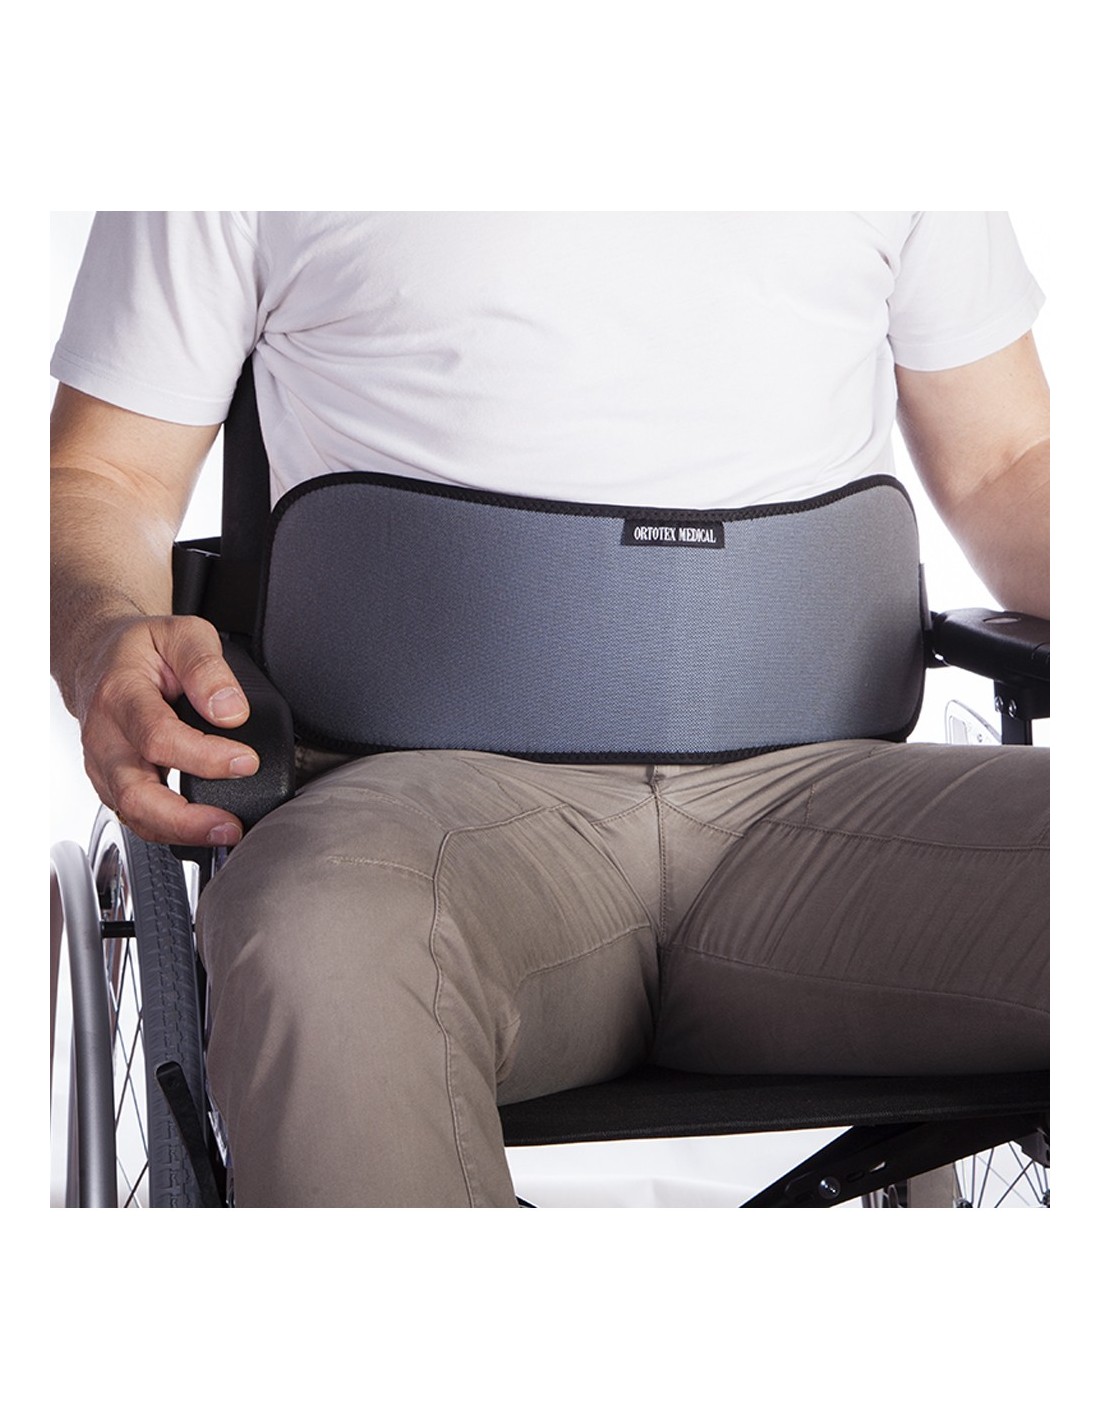 Cinturón abdominal para silla de ruedas y sillas de descanso